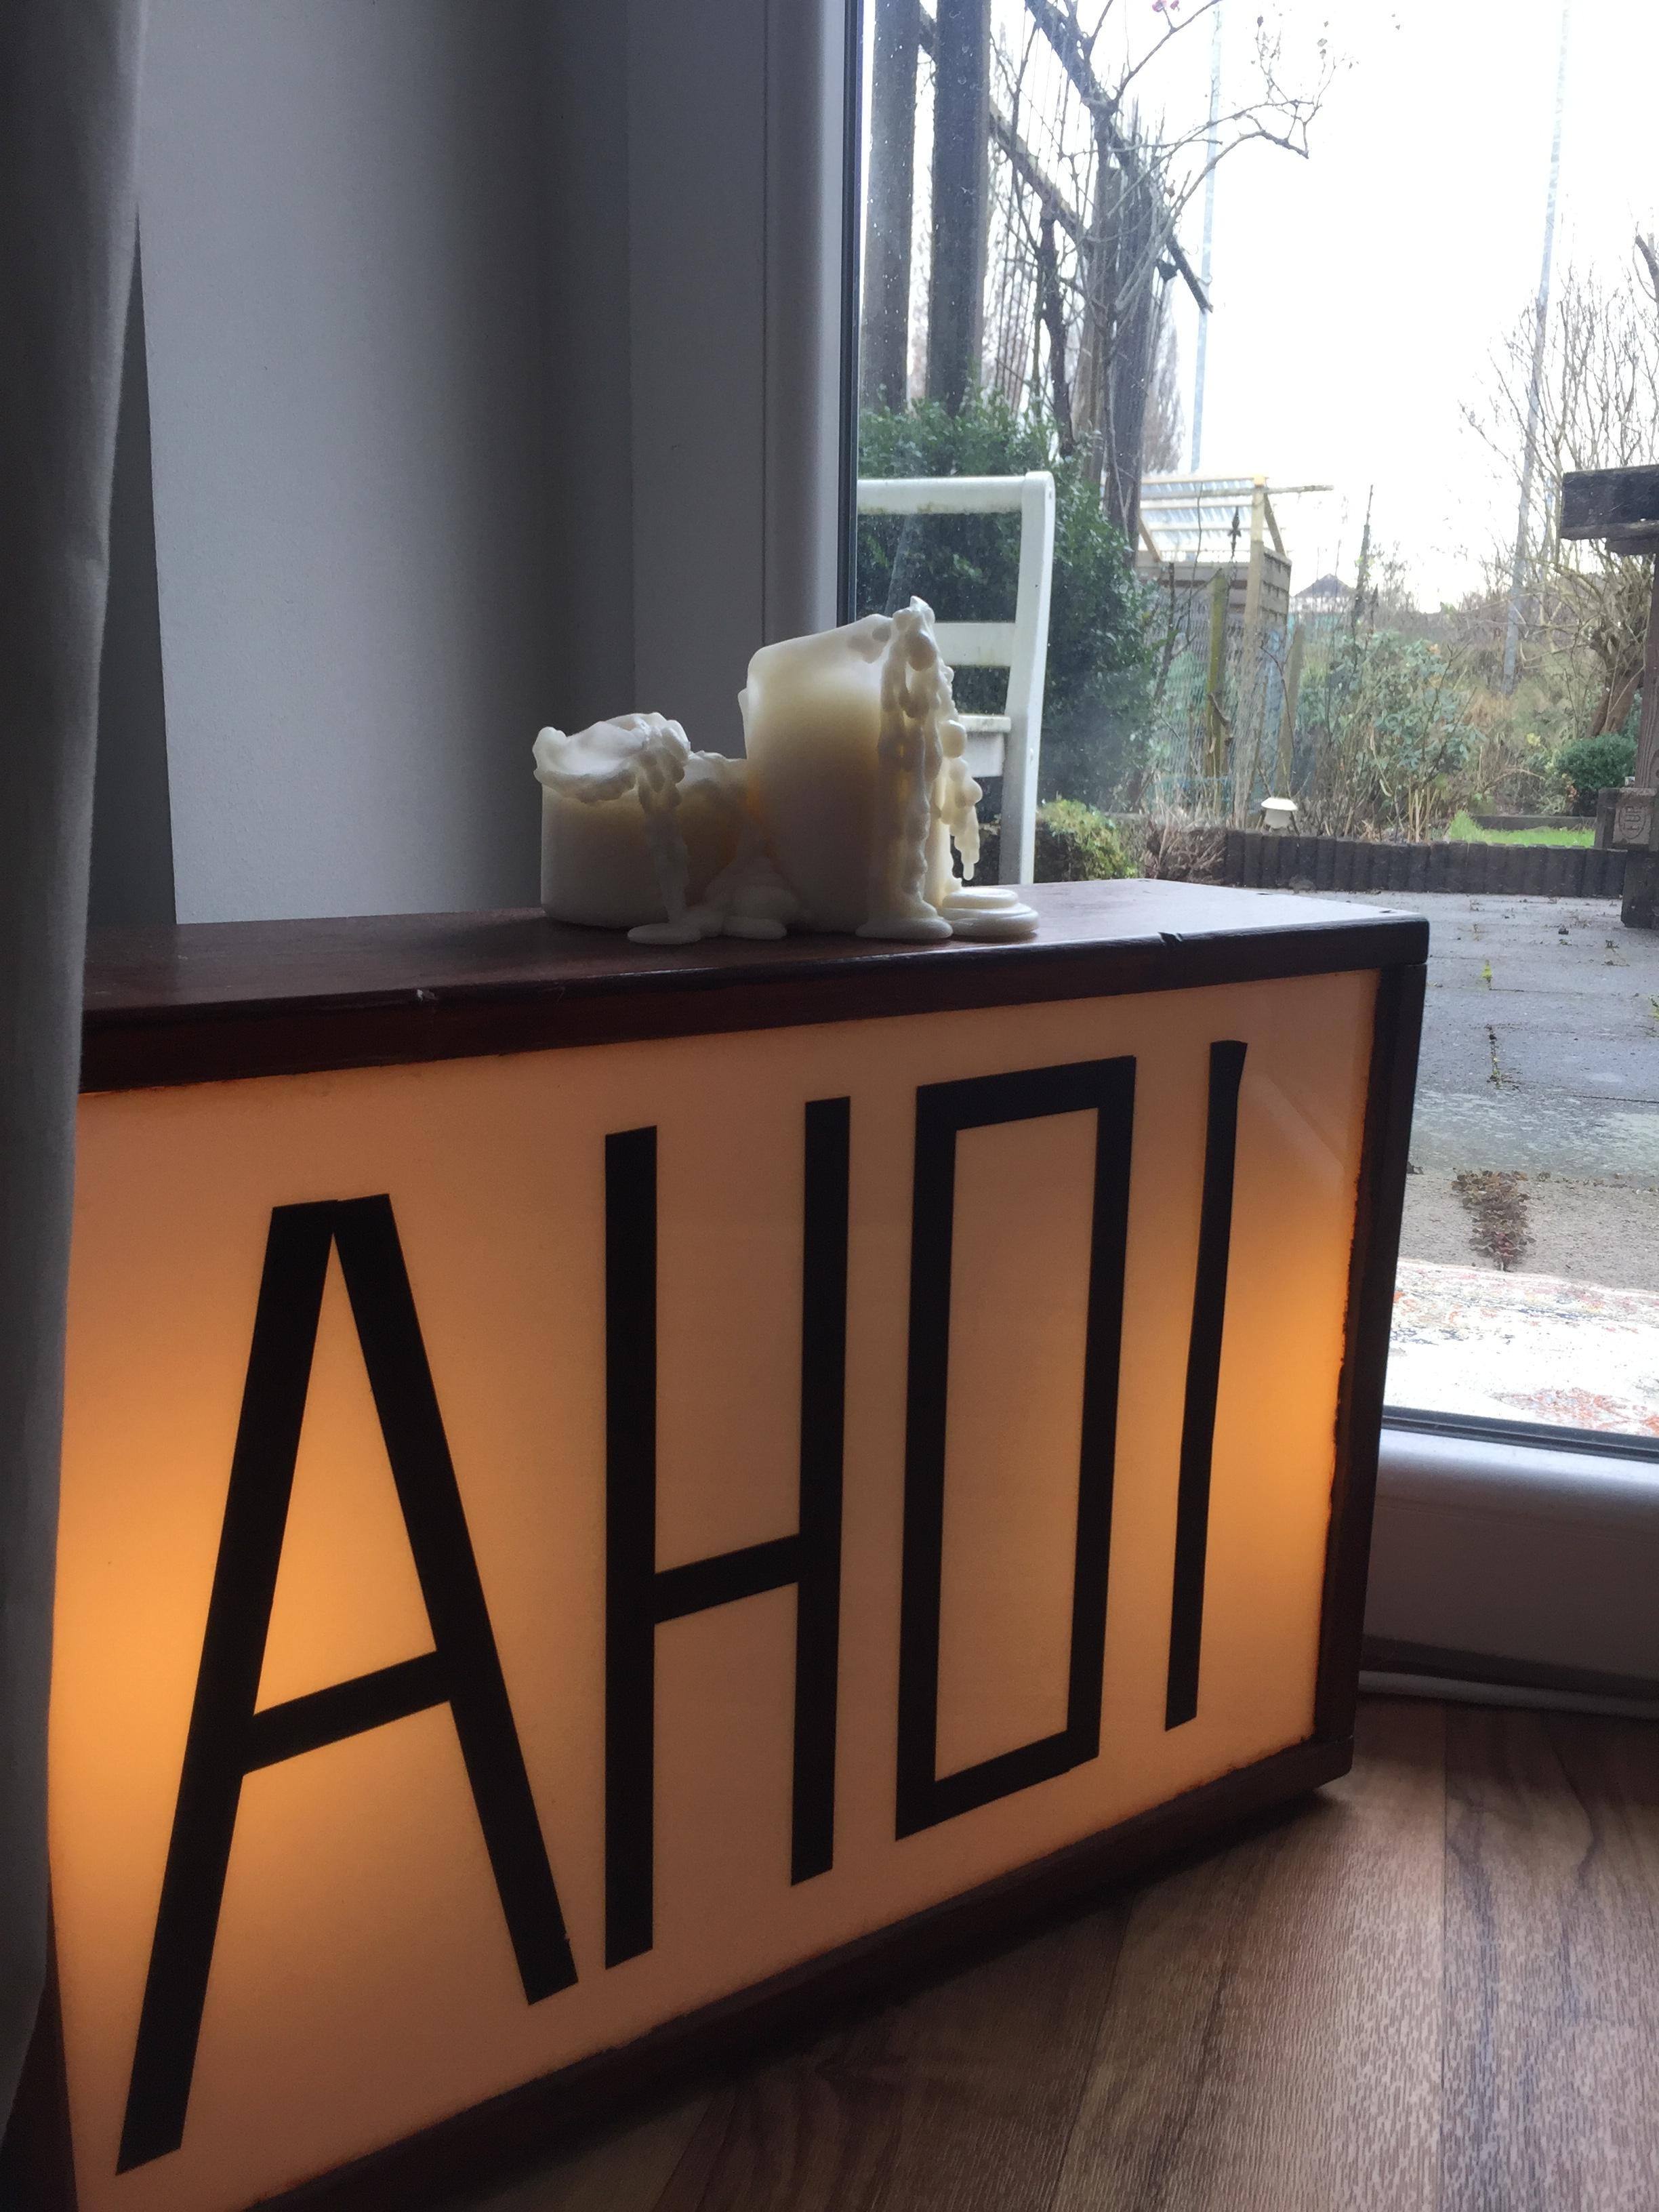 Mein Leuchtkasten :)
#geschenk #selbsgebaut #ahoi #light #gemütlich #wärme #kerzen